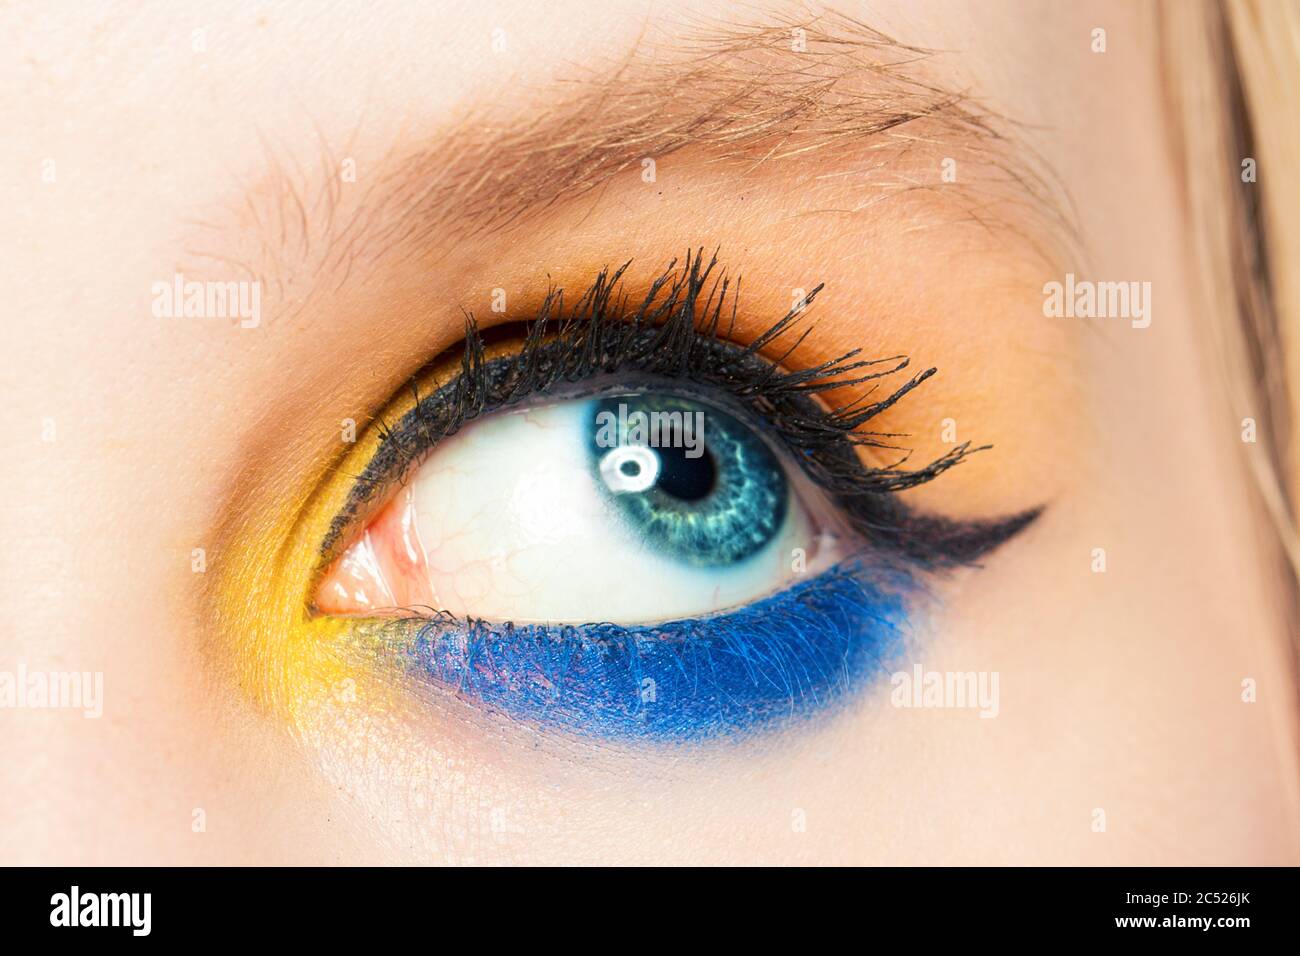 Mujer ojo mirando hacia arriba. El prado azul y amarillo y la flecha negra del párpado se acercan Foto de stock